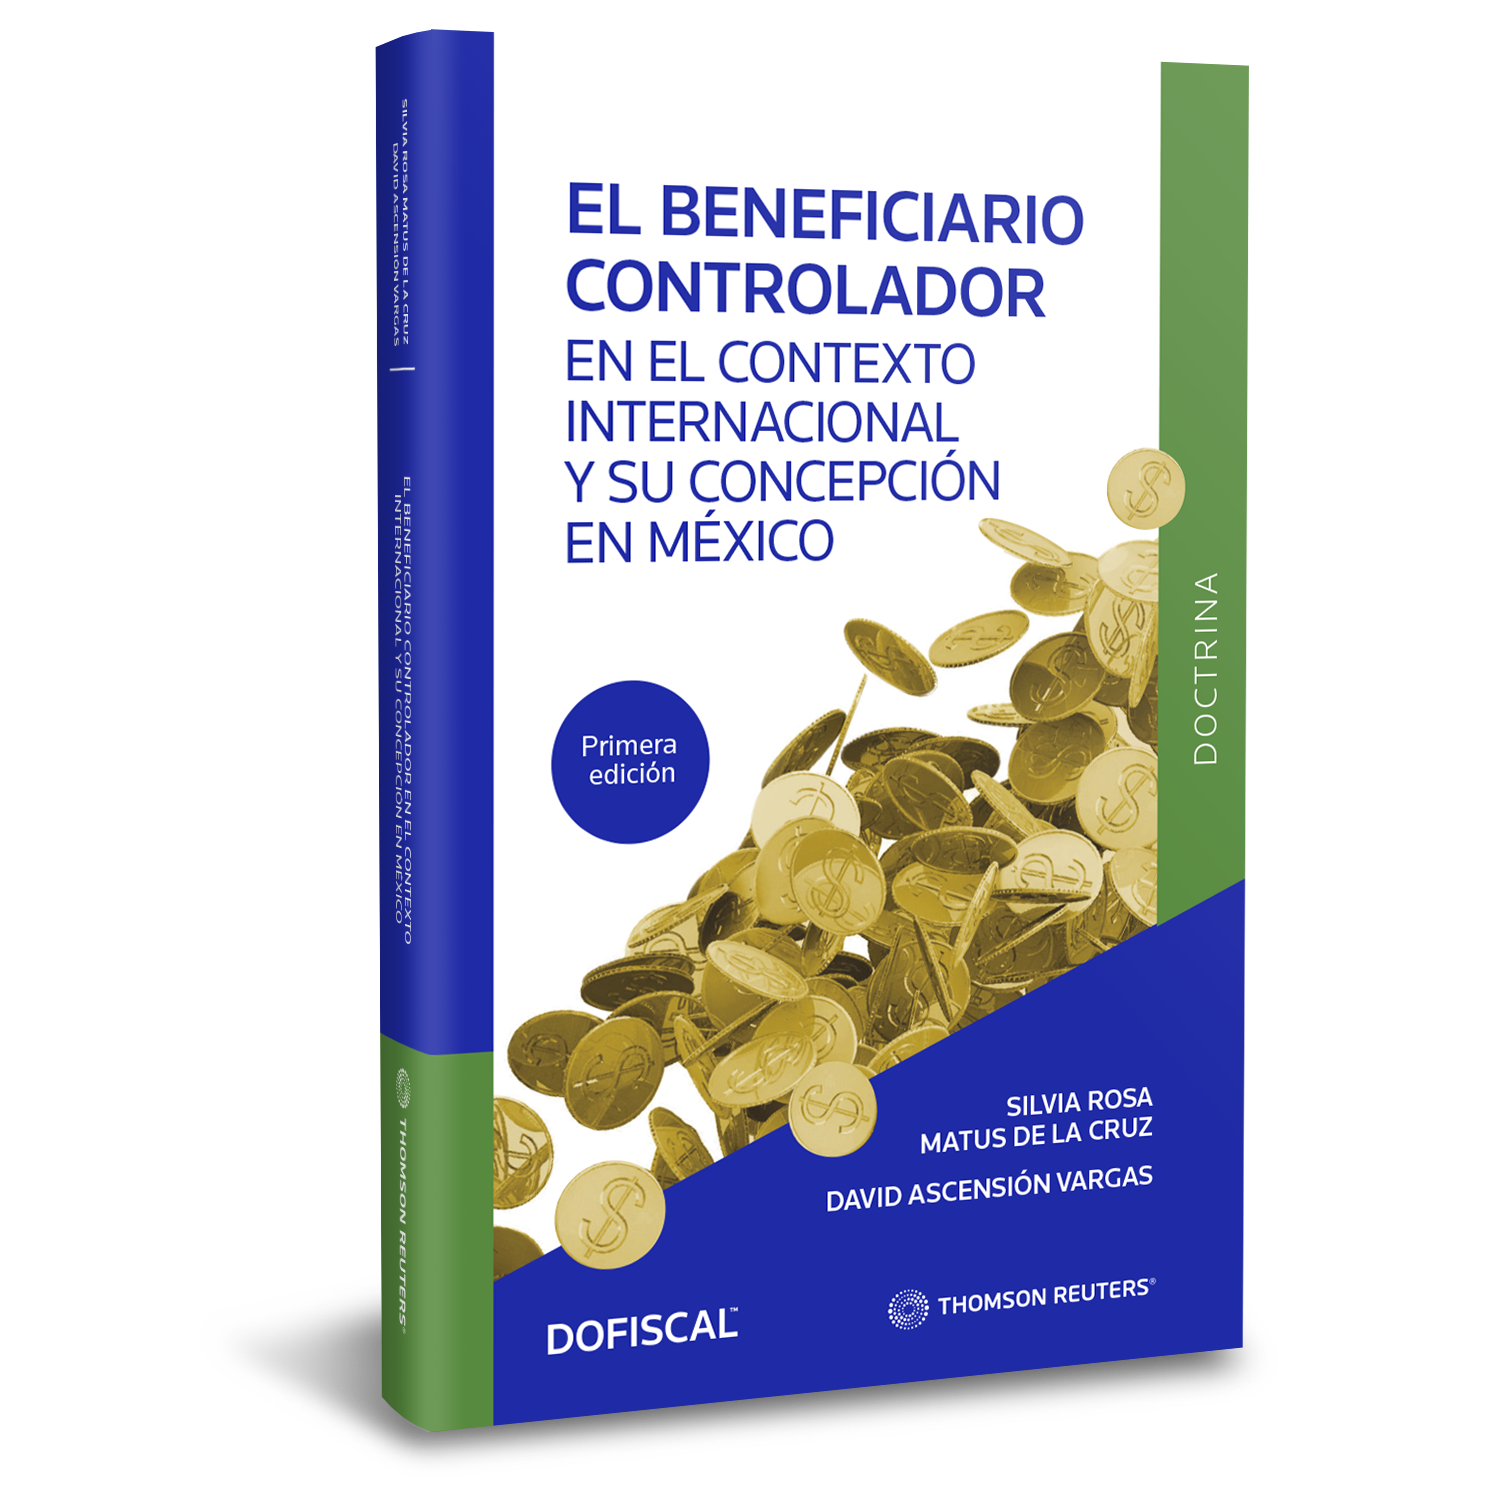  El beneficiario controlador en el contexto internacional y su concepción en México